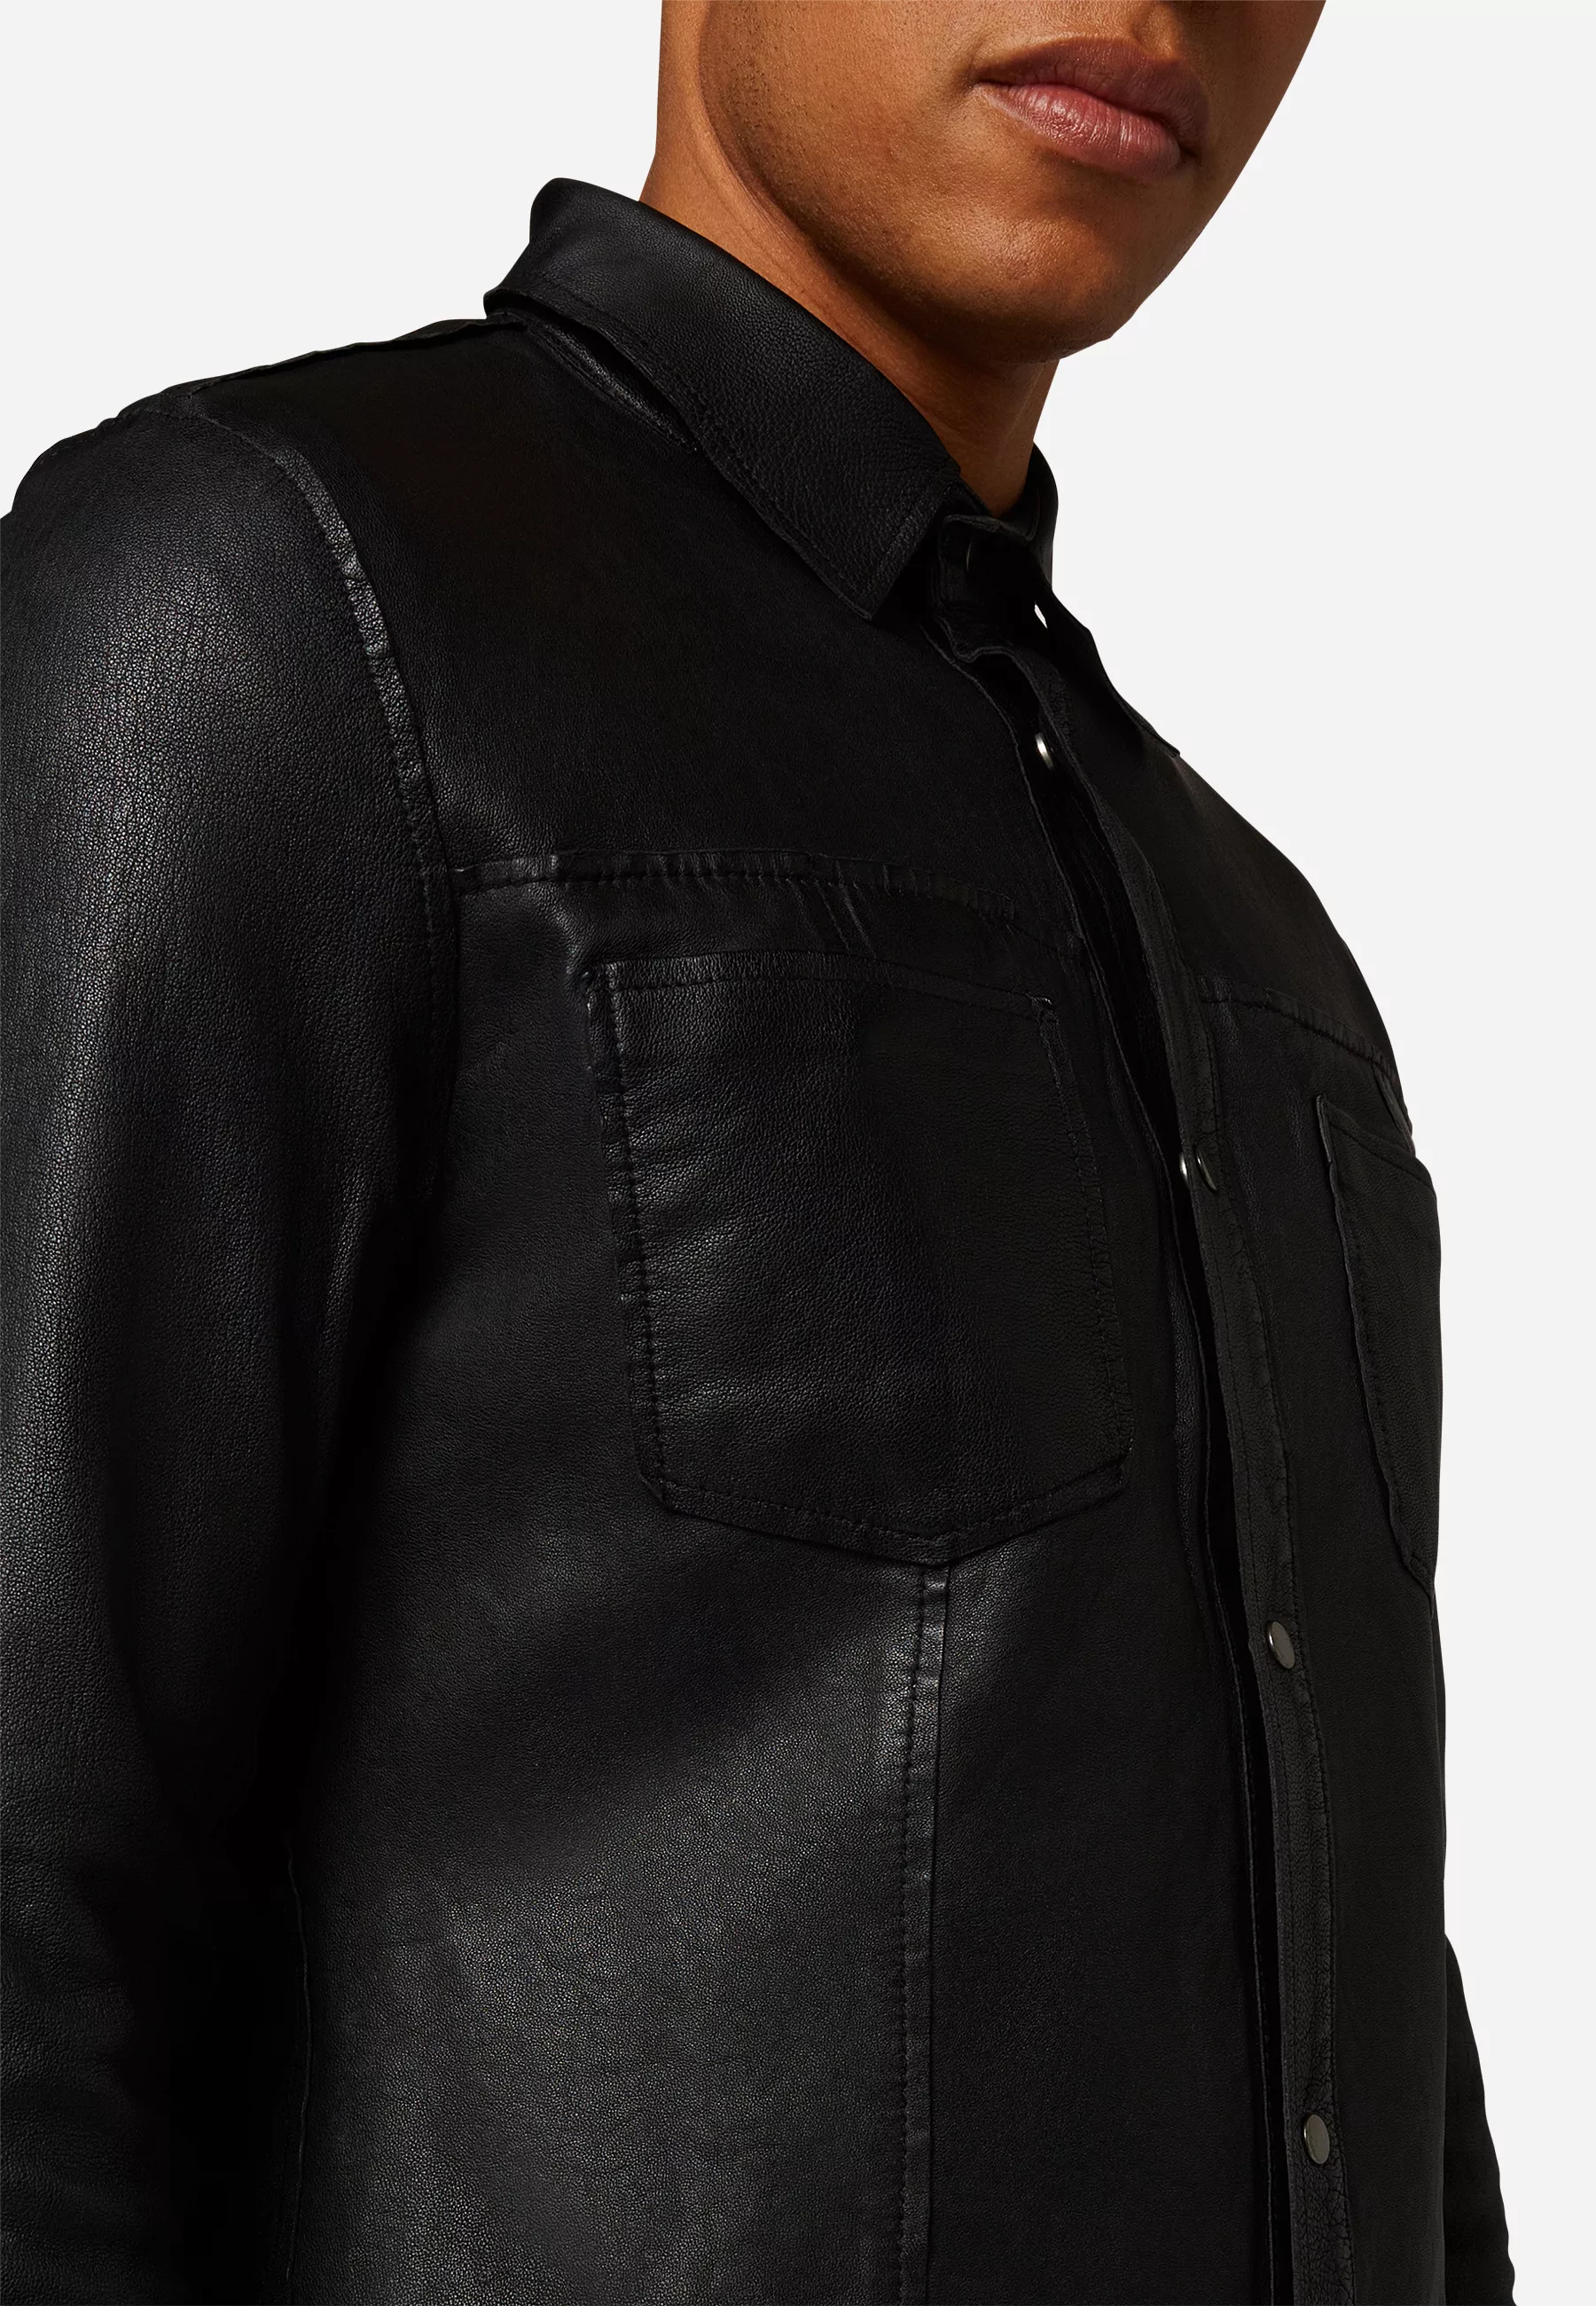 Herren Lederjacke Reverse Shirt Glattleder in Schwarz von Ricano, Detailansicht am Model vom Kragen und den Brusttaschen